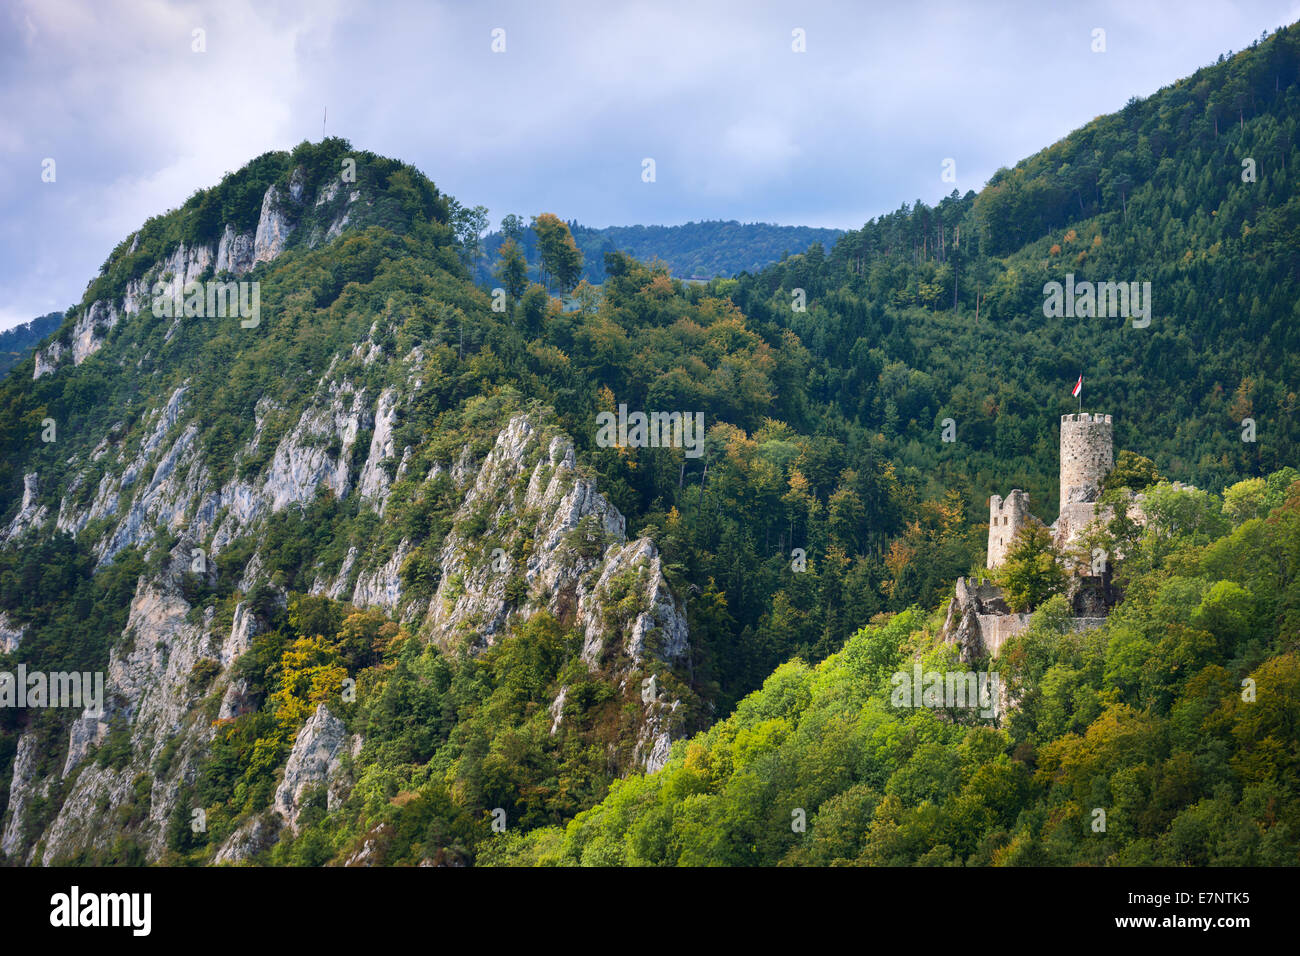 Nouveau Falcon's stone, Suisse, Europe, canton de Soleure, Jura, Jura, Solothurner château, bois, forêt, rock, falaise, automne Banque D'Images